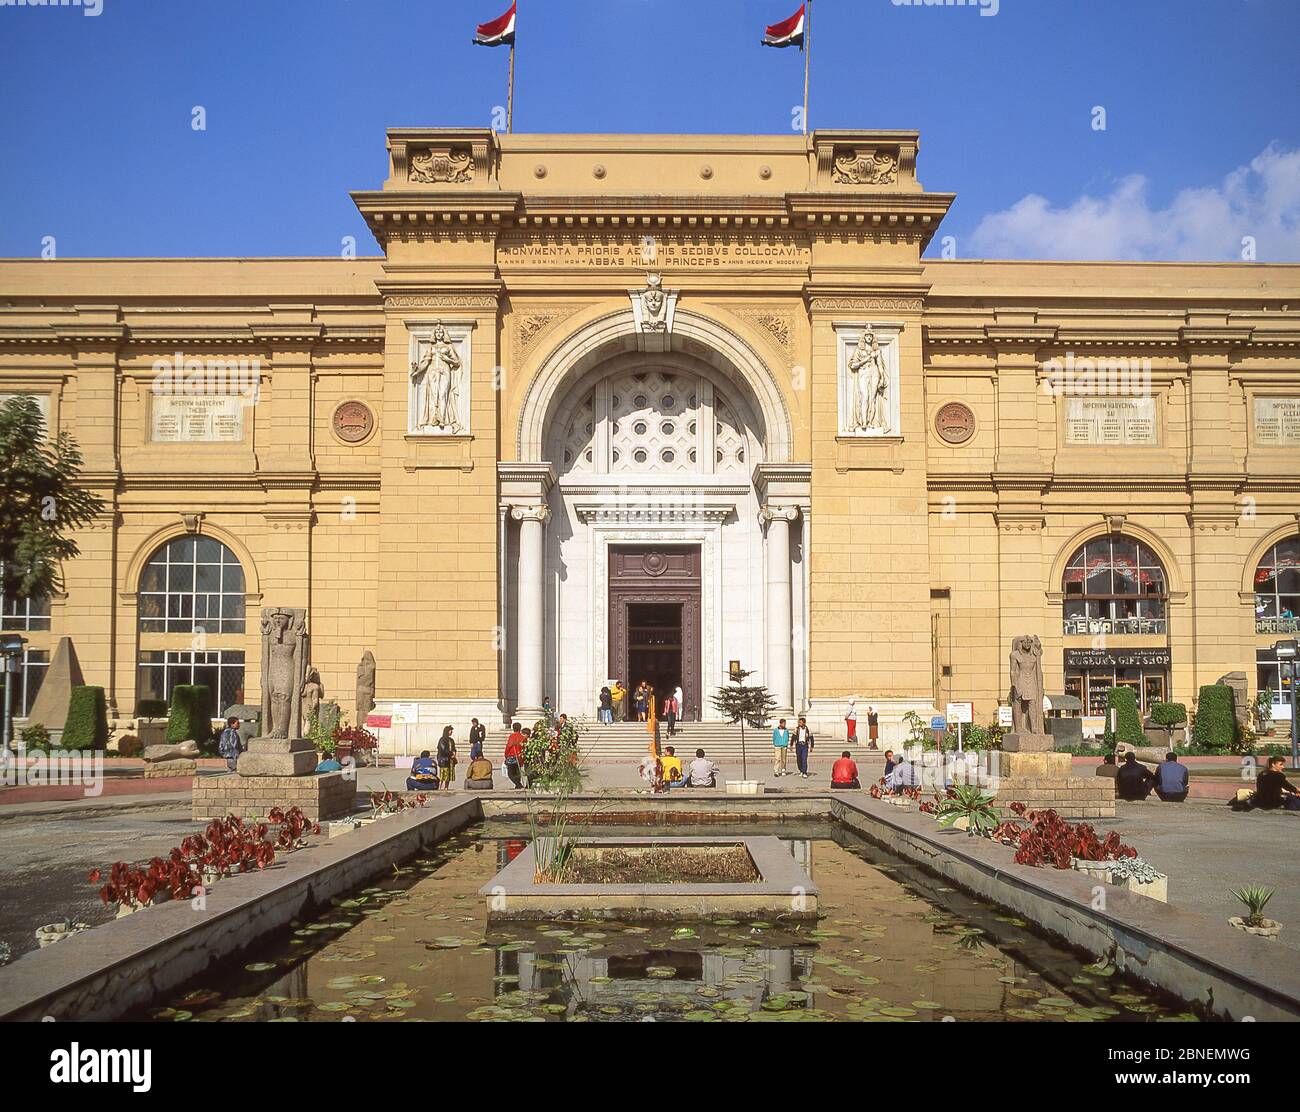 Entrée au Musée des antiquités égyptiennes (Musée égyptien), place Tahrir, le Caire, République d'Égypte Banque D'Images